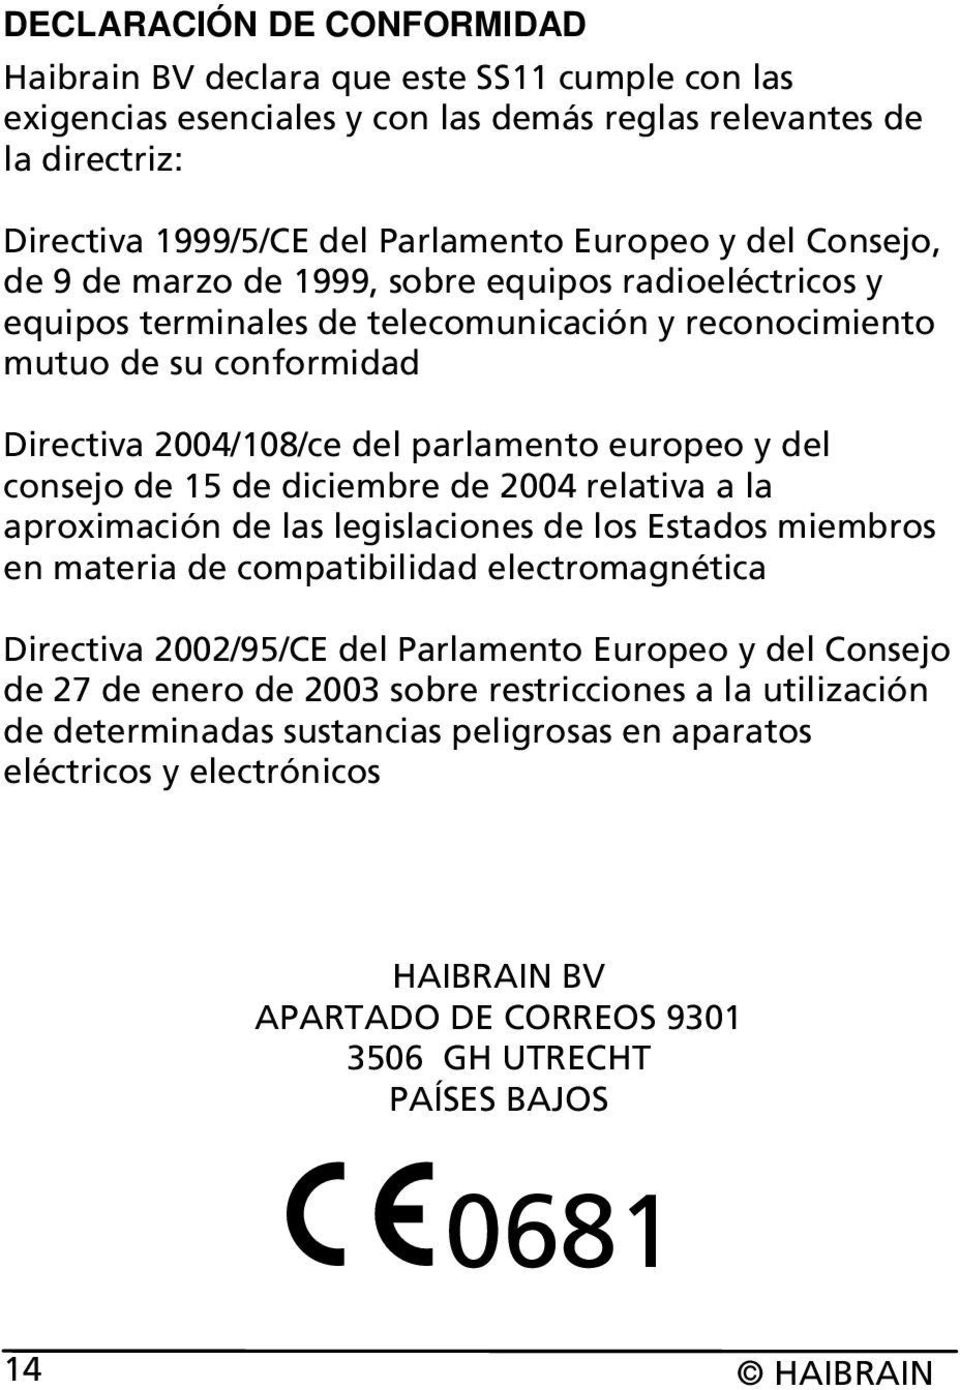 consejo de 15 de diciembre de 2004 relativa a la aproximación de las legislaciones de los Estados miembros en materia de compatibilidad electromagnética Directiva 2002/95/CE del Parlamento Europeo y